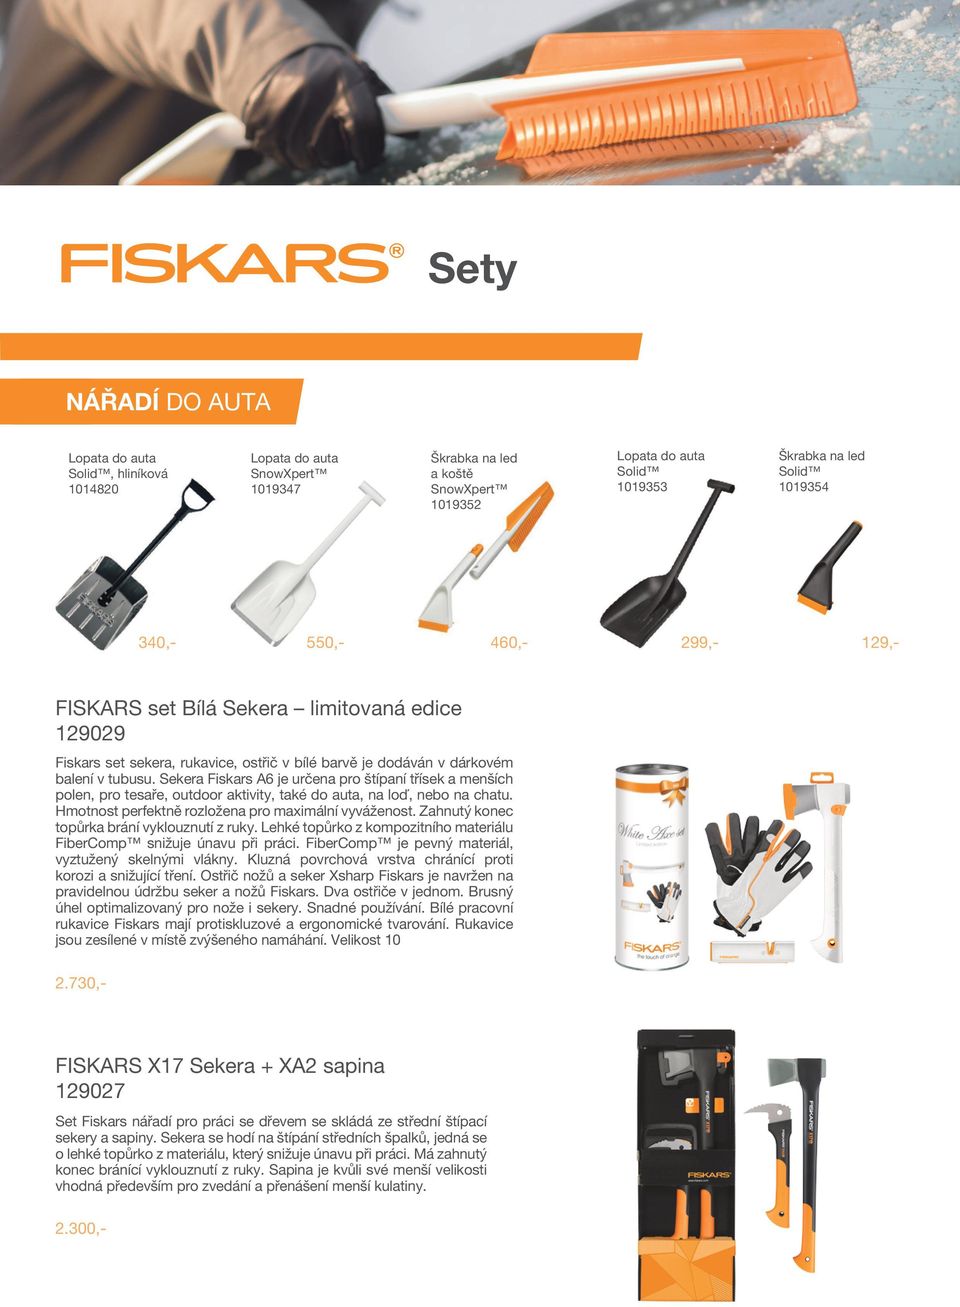 Sekera Fiskars A6 je určena pro štípaní třísek a menších polen, pro tesaře, outdoor aktivity, také do auta, na loď, nebo na chatu. Hmotnost perfektně rozložena pro maximální vyváženost.